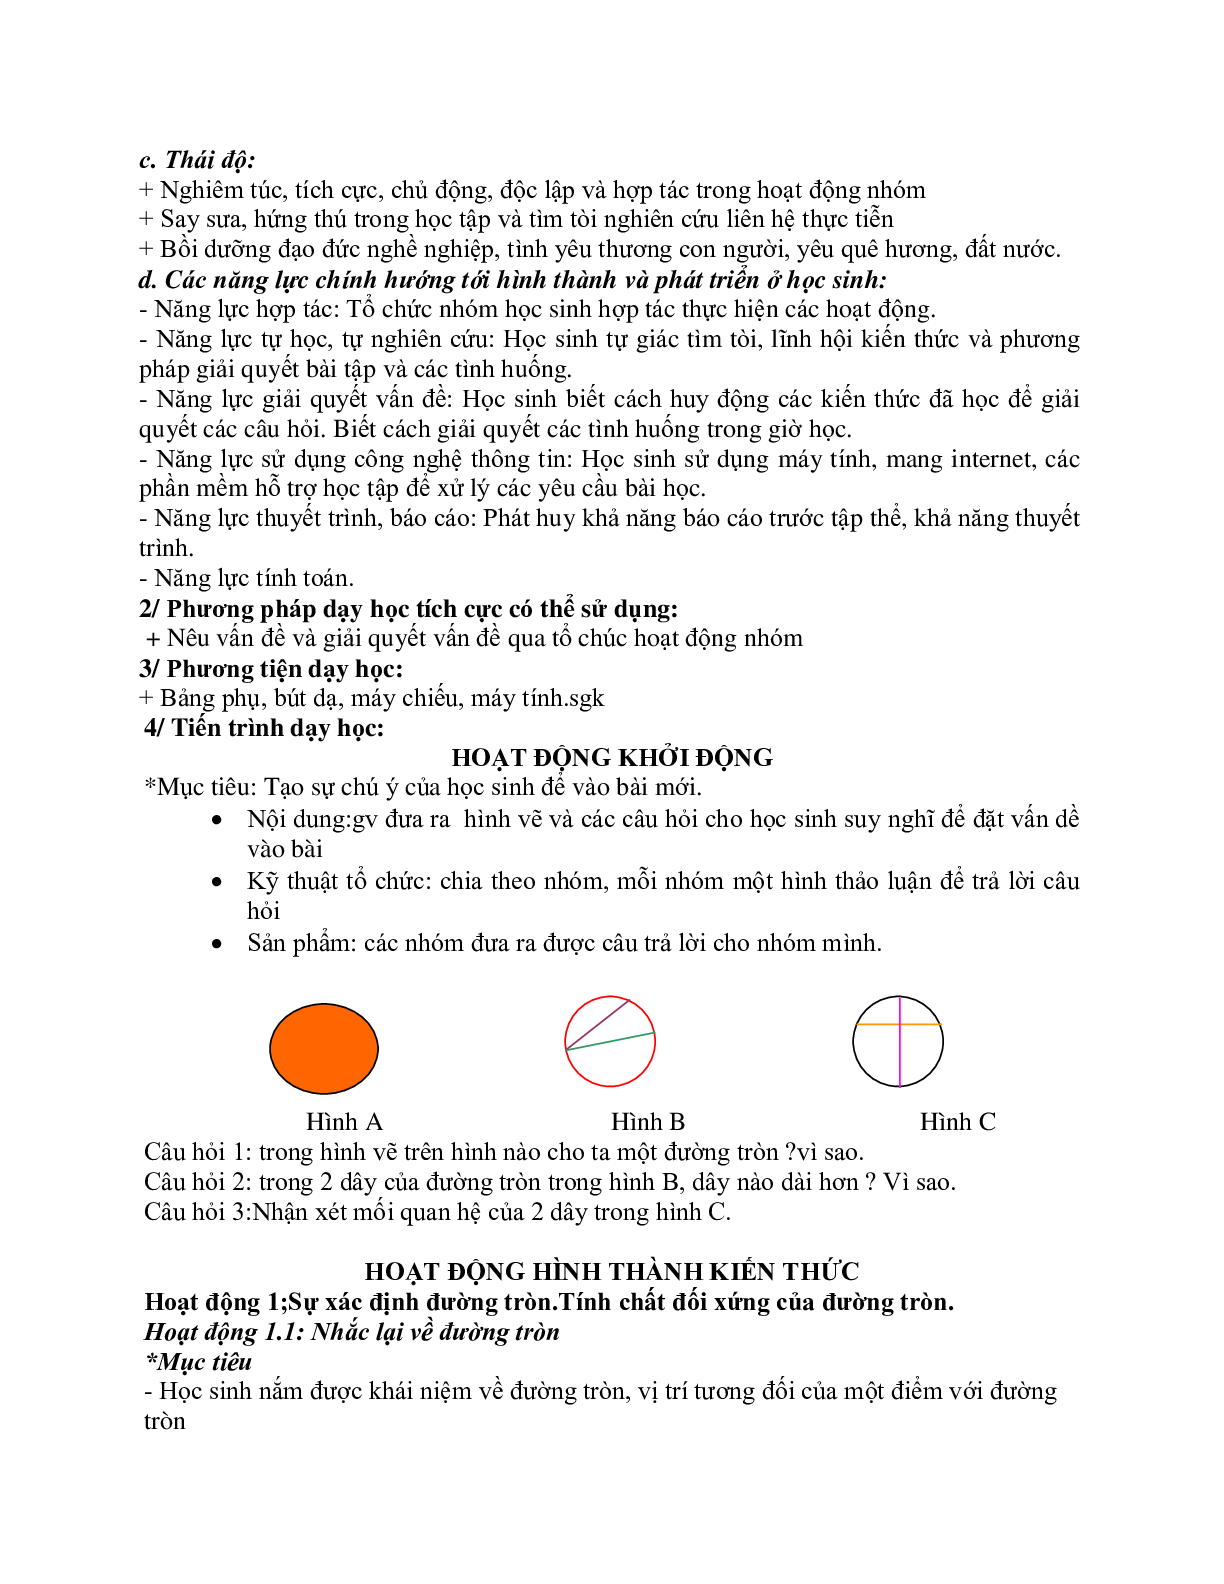 Giáo án Hình học 9 chương 2 bài 1: Sự xác định đường tròn. Tính chất đối xứng của đường tròn mới nhất (trang 2)